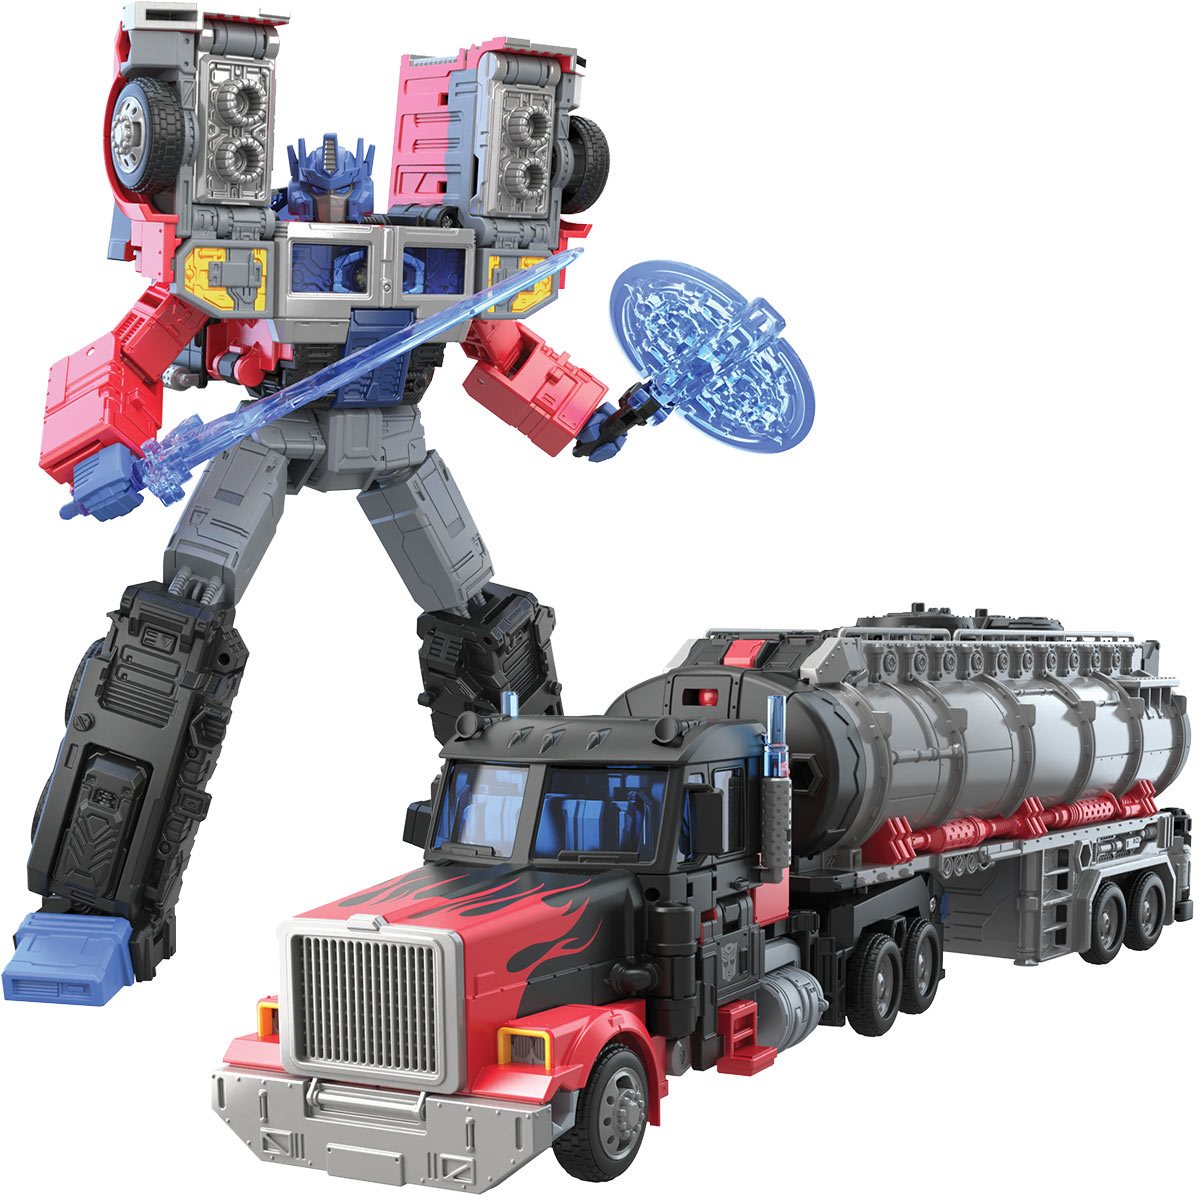 fest Vedholdende jungle Transformers Generations Legacy Leader Laser Optimus Prime